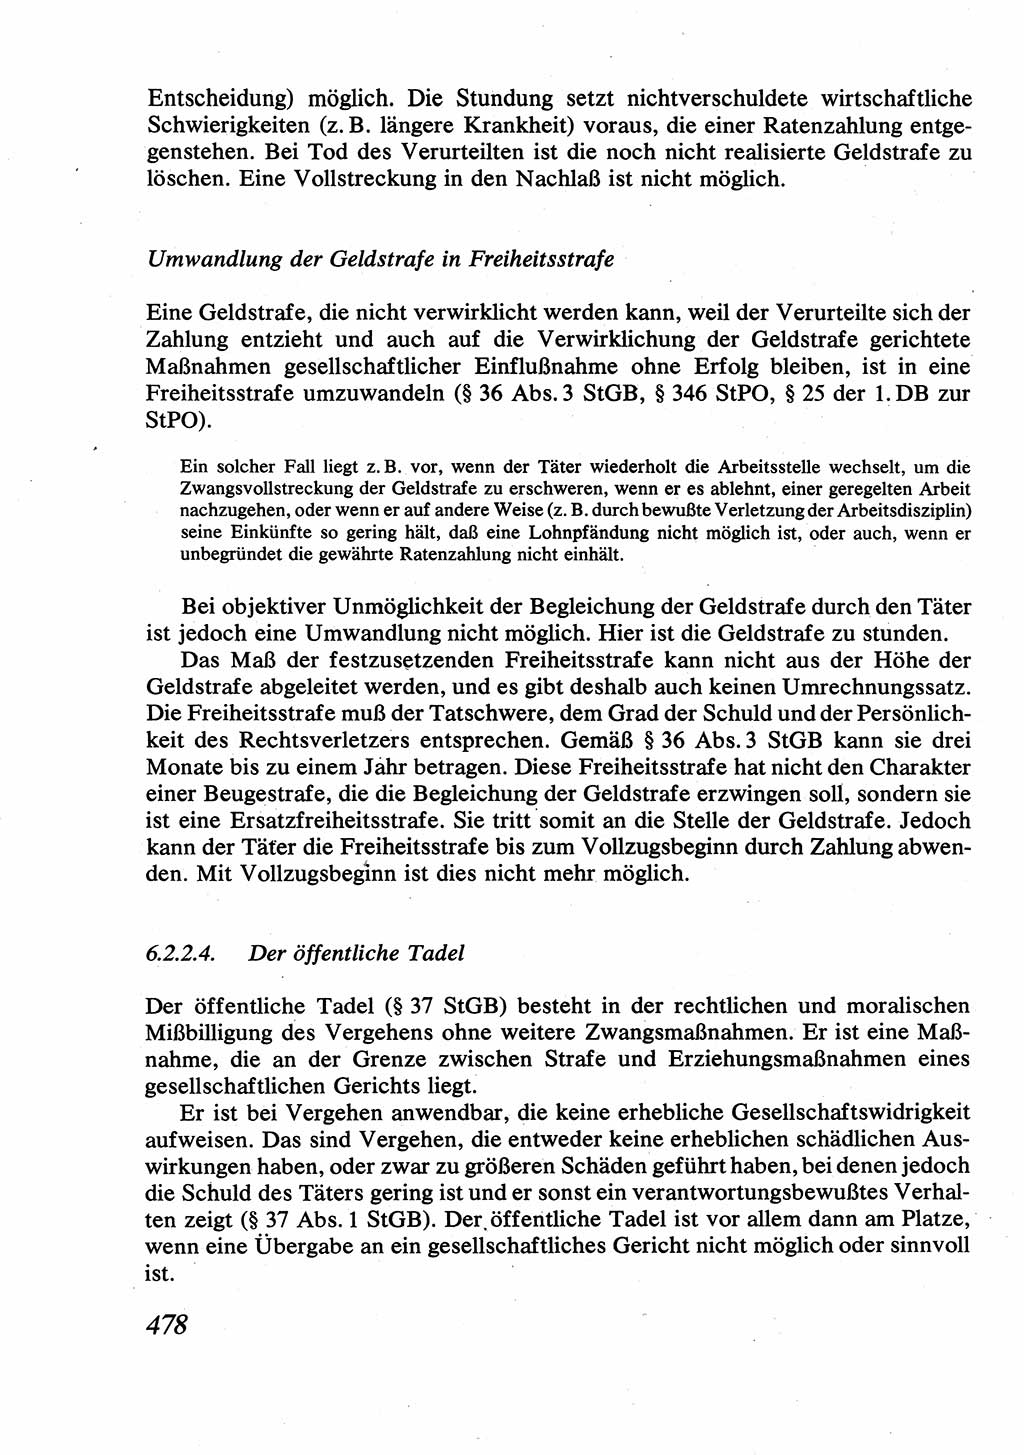 Strafrecht [Deutsche Demokratische Republik (DDR)], Allgemeiner Teil, Lehrbuch 1976, Seite 478 (Strafr. DDR AT Lb. 1976, S. 478)